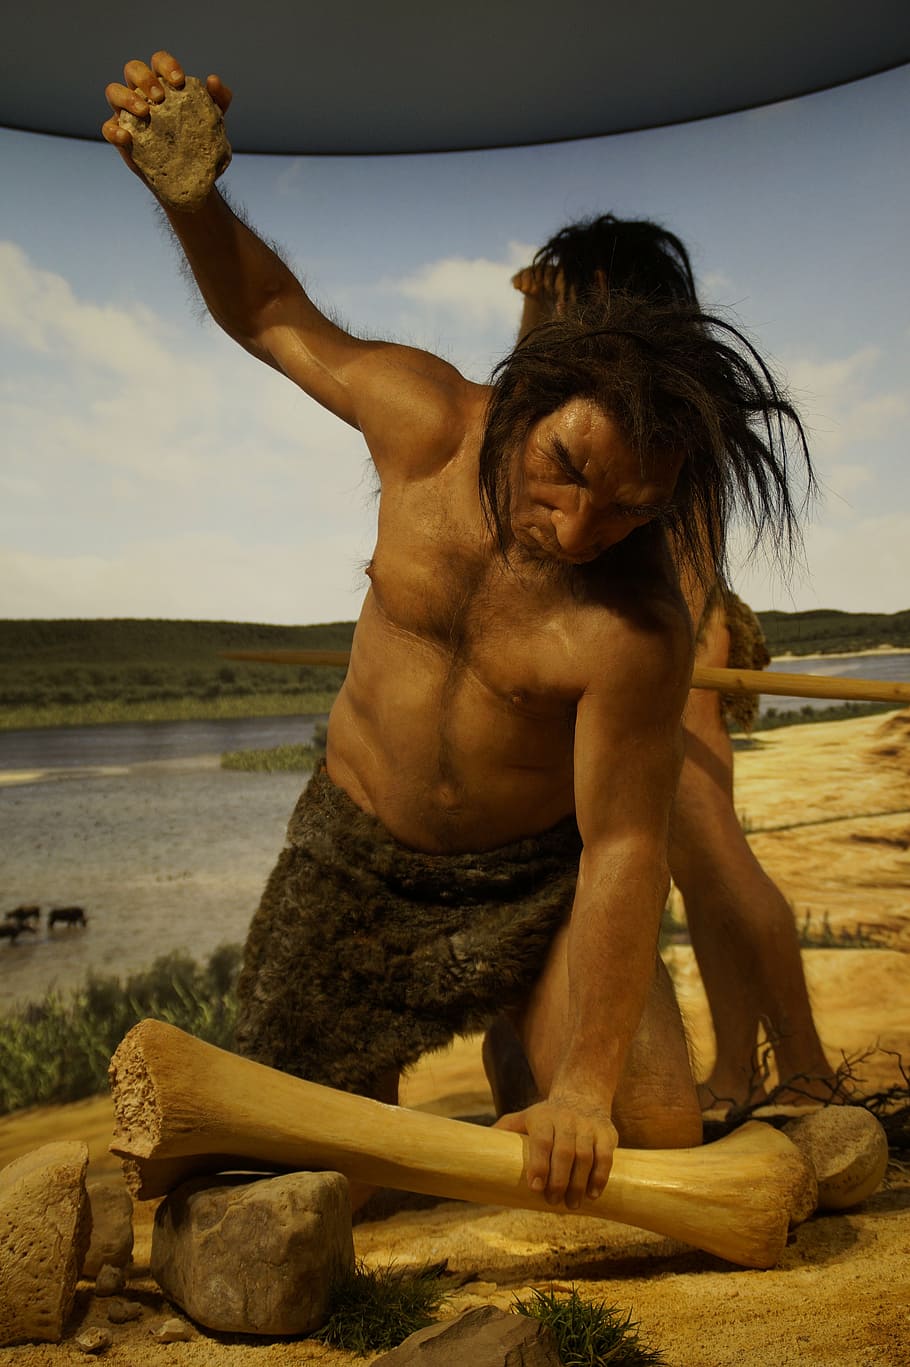 antepassado, idade da pedra, homem das cavernas, neandertal, caça, museu, boneca, homem, evolução, desenvolvimento